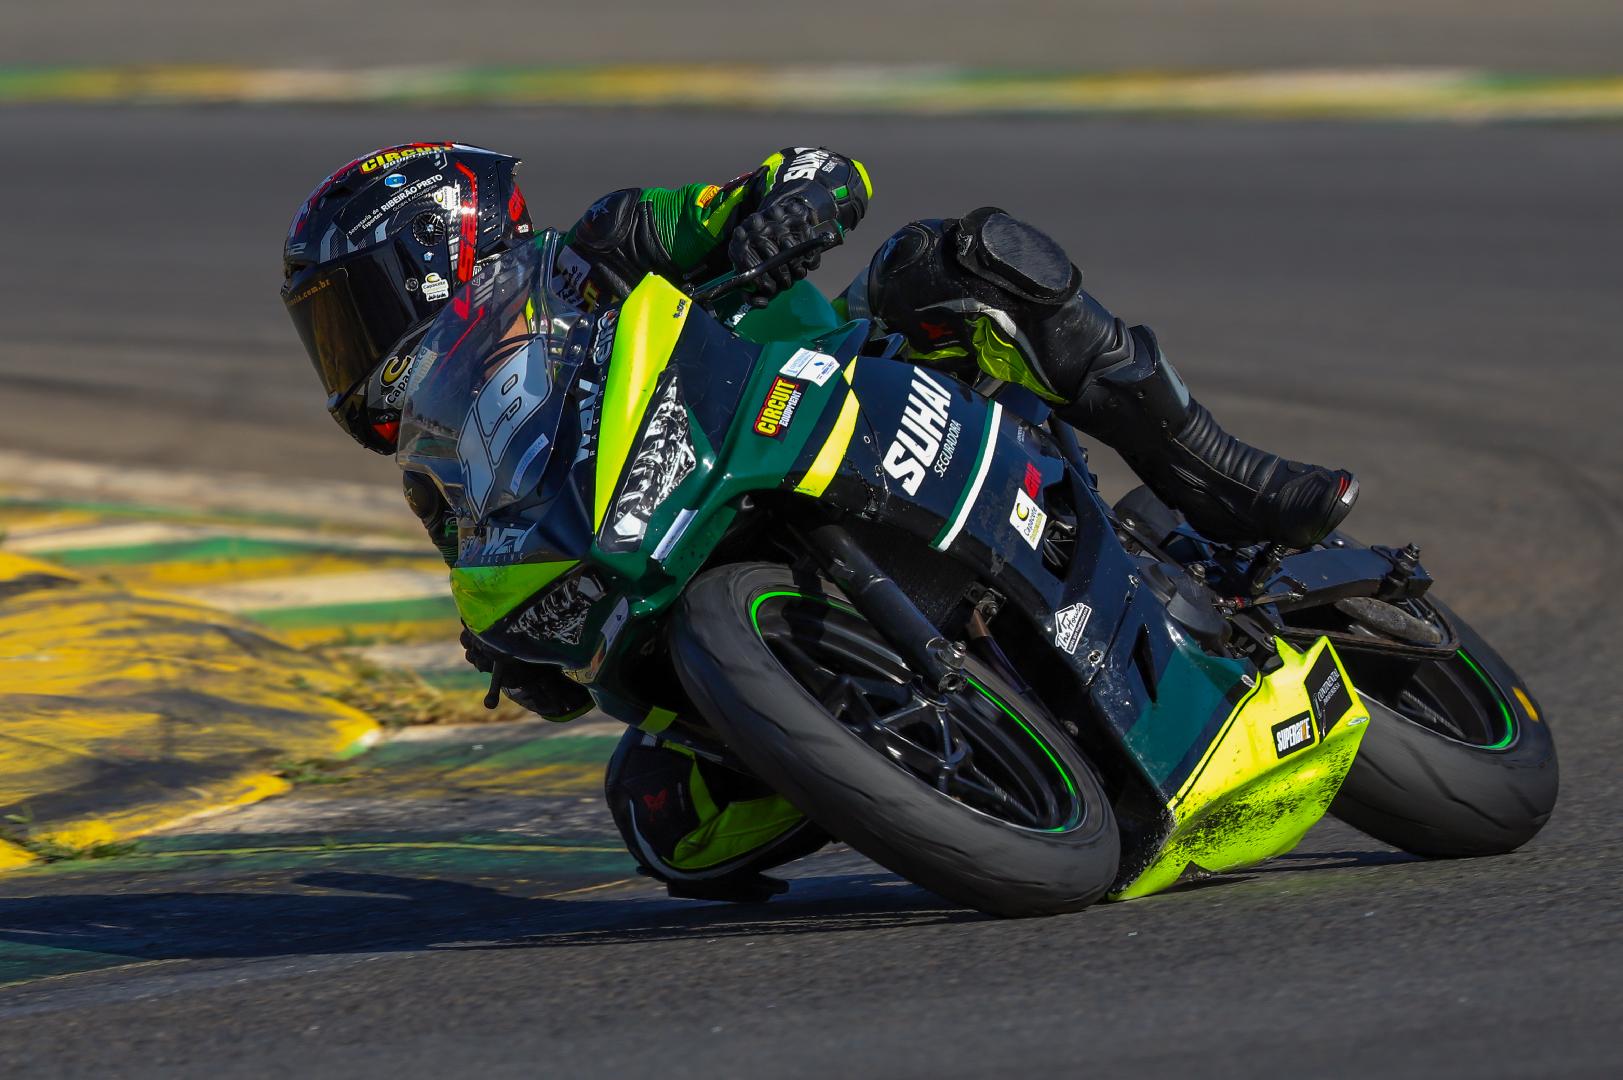 Após estreia na categoria R3 Talent, piloto Léo Marques disputa 2ª etapa no Brasileiro de Motovelocidade